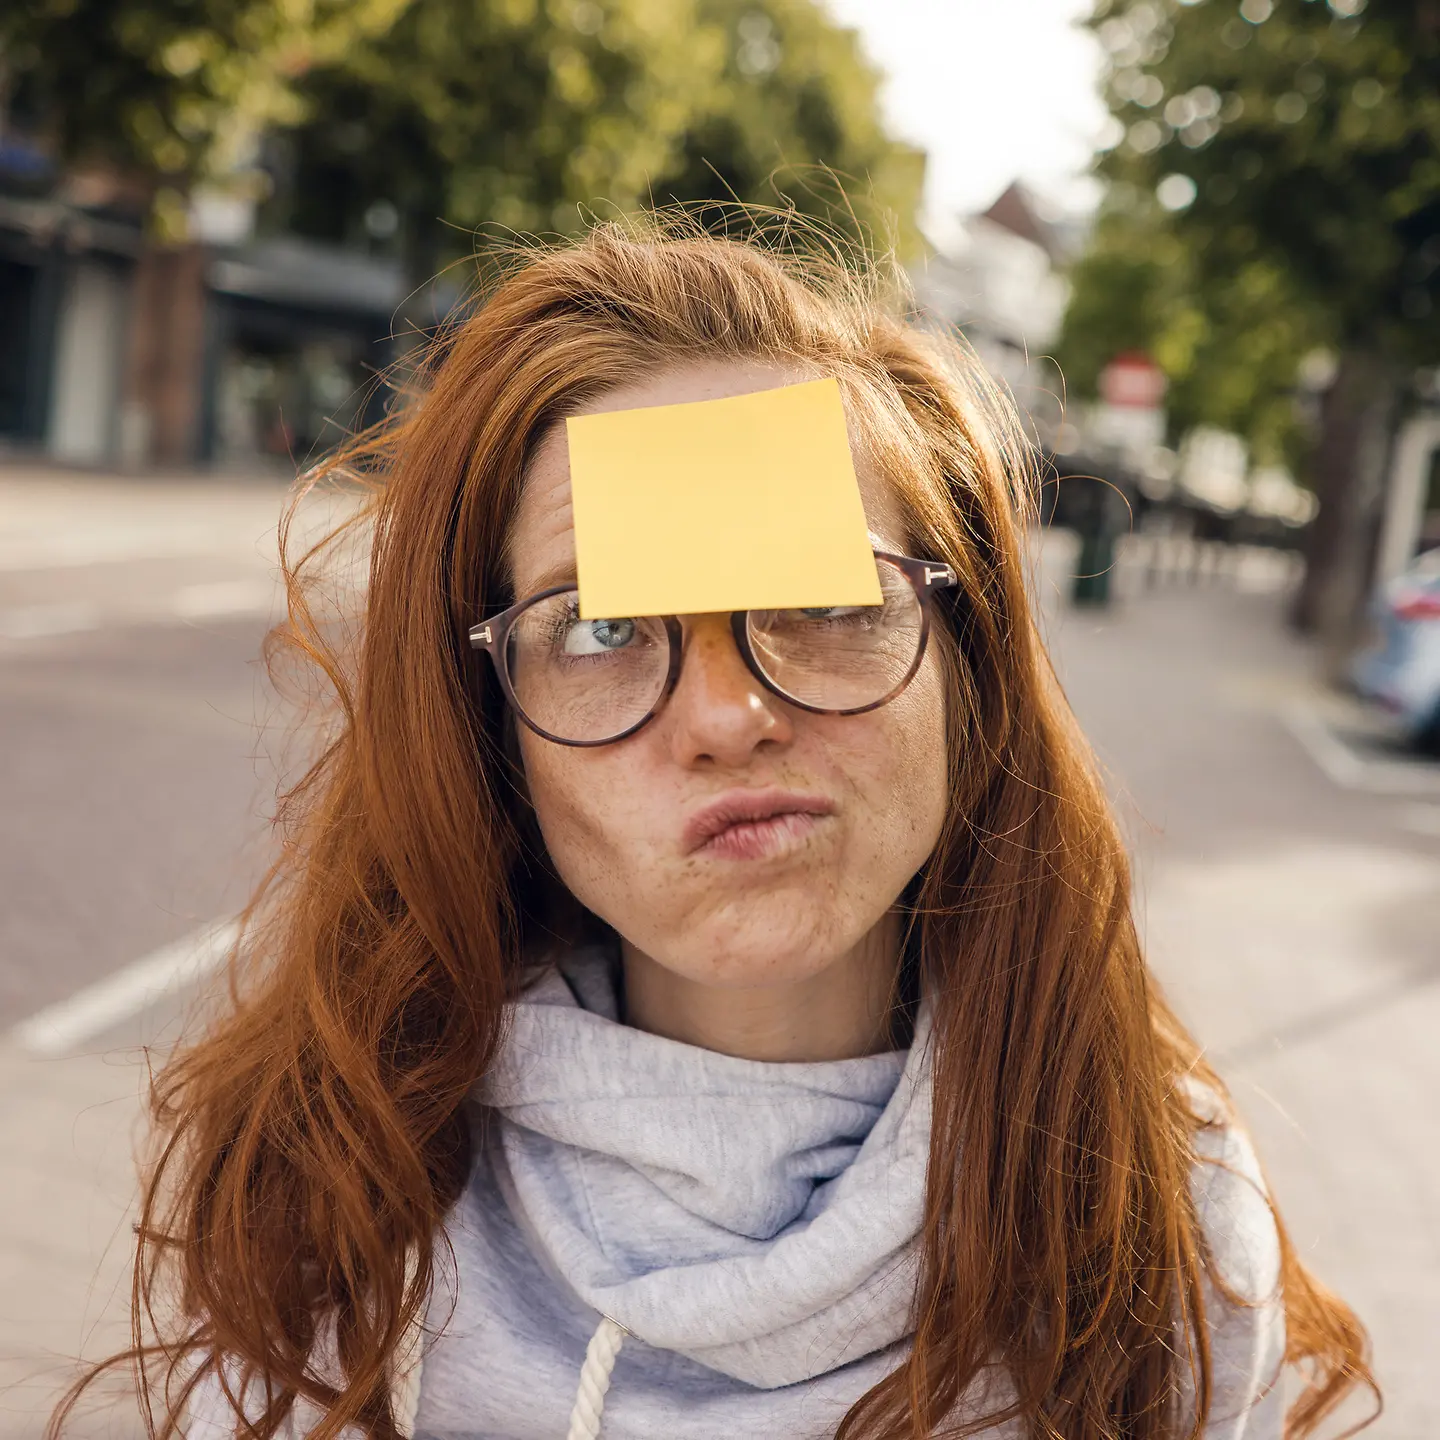 Eine junge Frau schaut skeptisch auf einen gelben Zettel, der auf ihrer Stirn klebt.